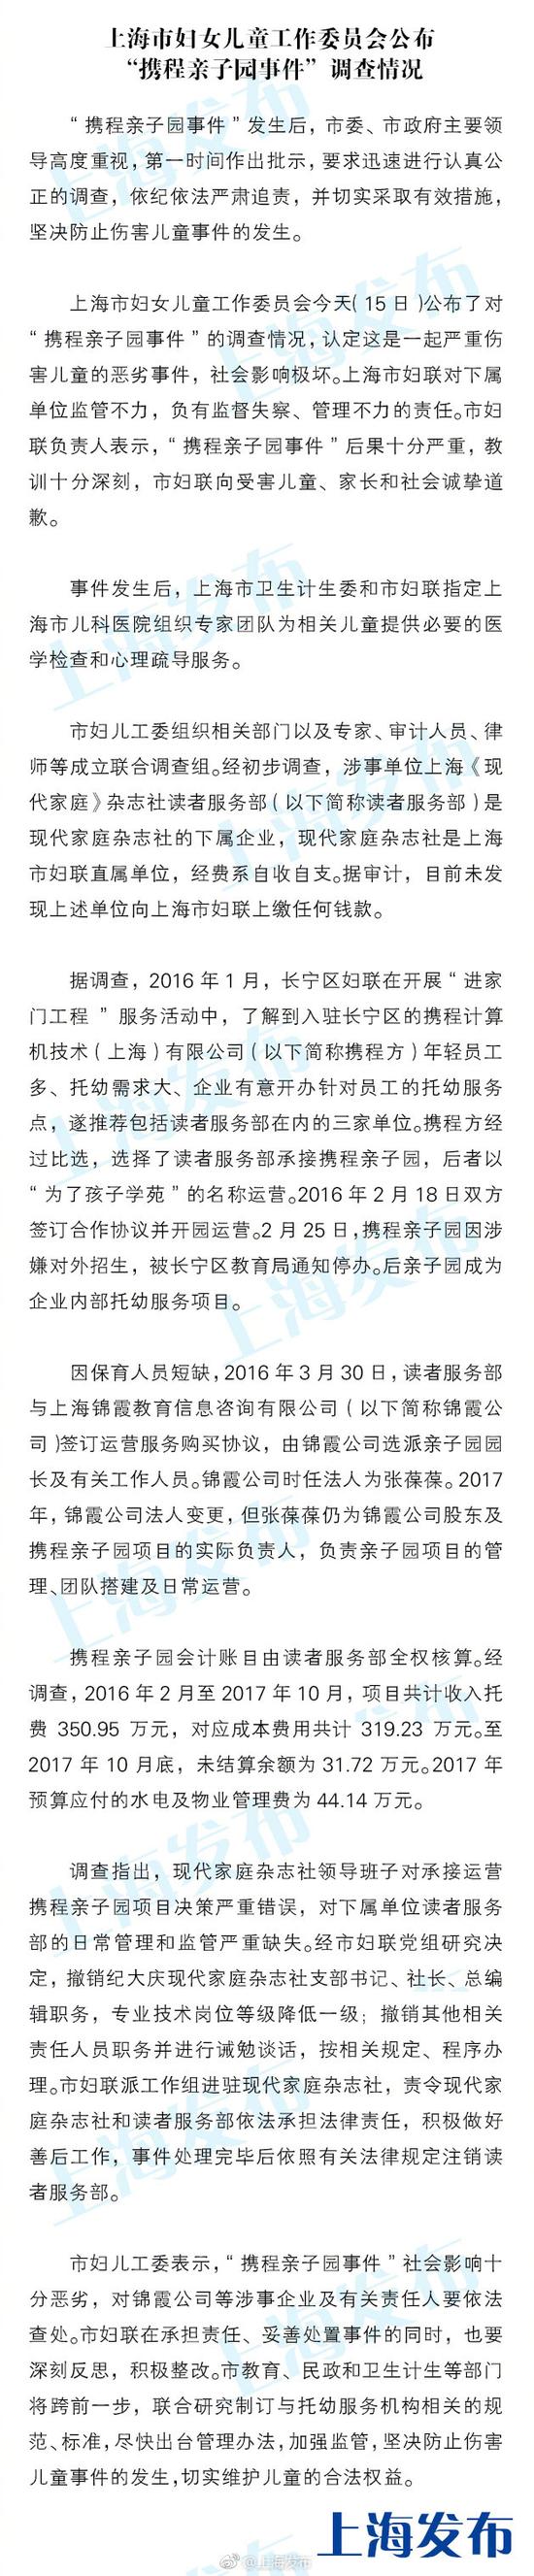 上海妇儿工委公布“携程亲子园事件”调查情况